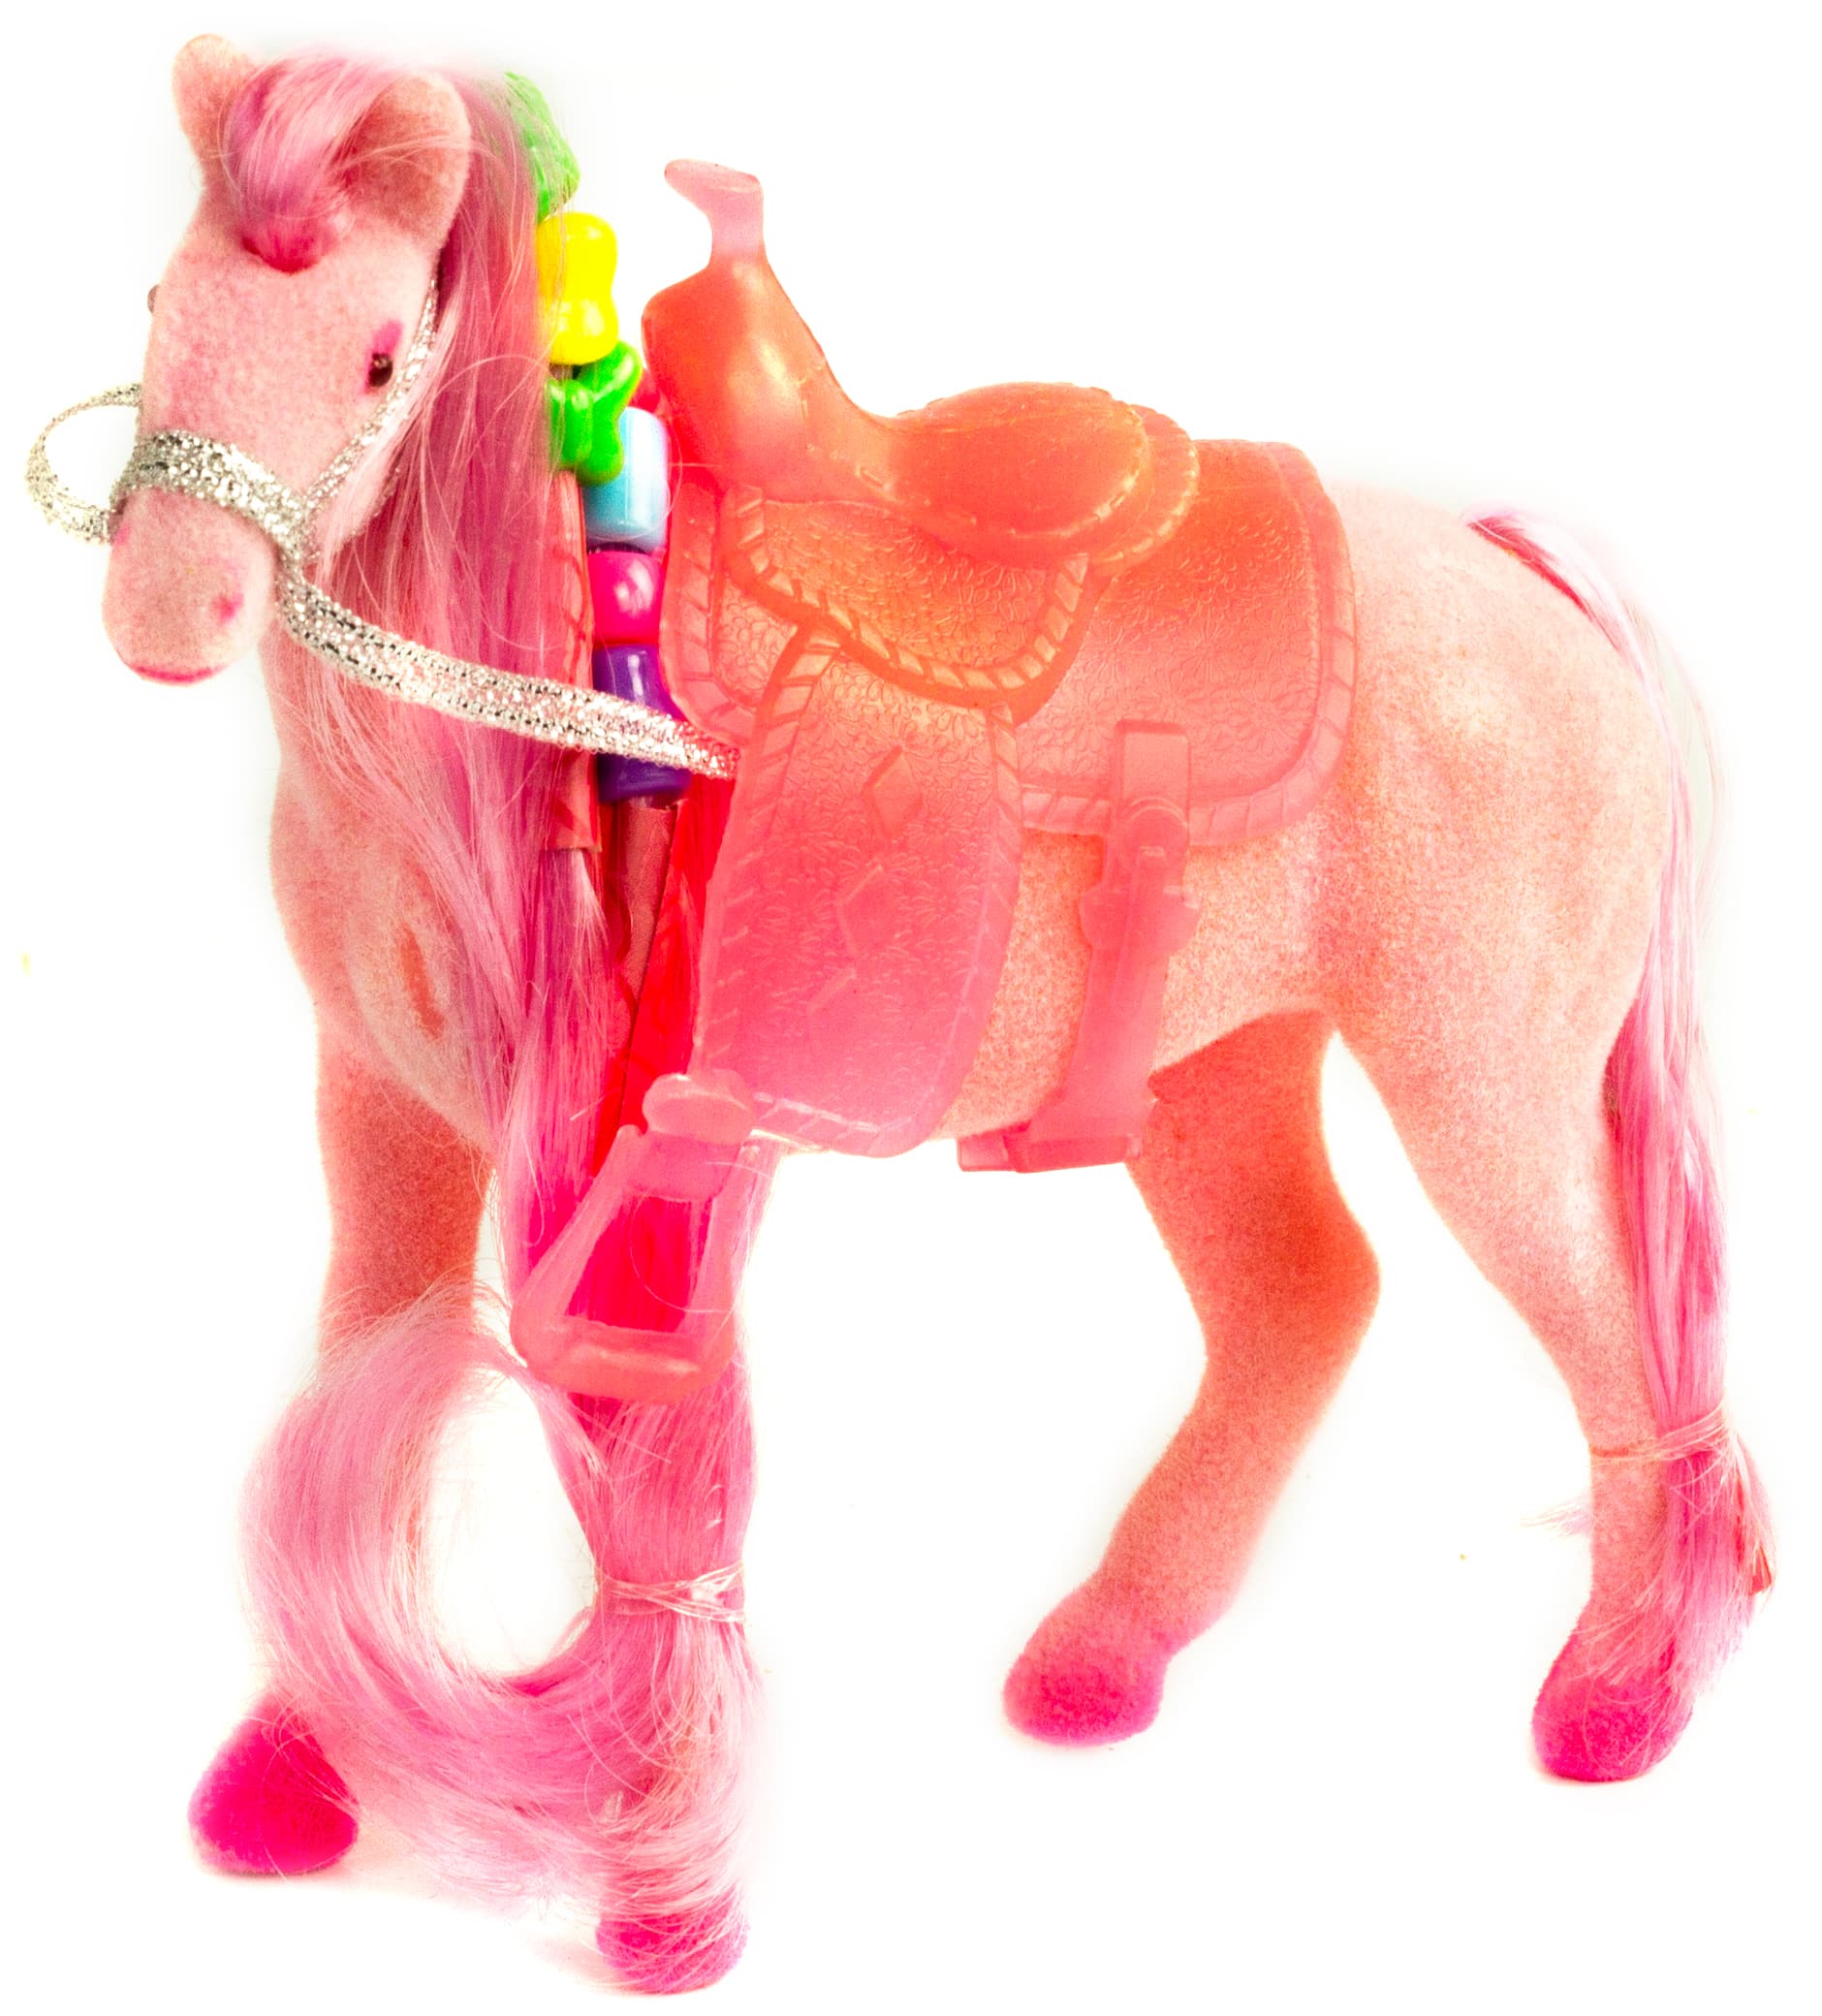 Детская кукольная игрушечная фигурка «Лошадка Принцессы» 3309 для девочек, 10 см. / Розовая